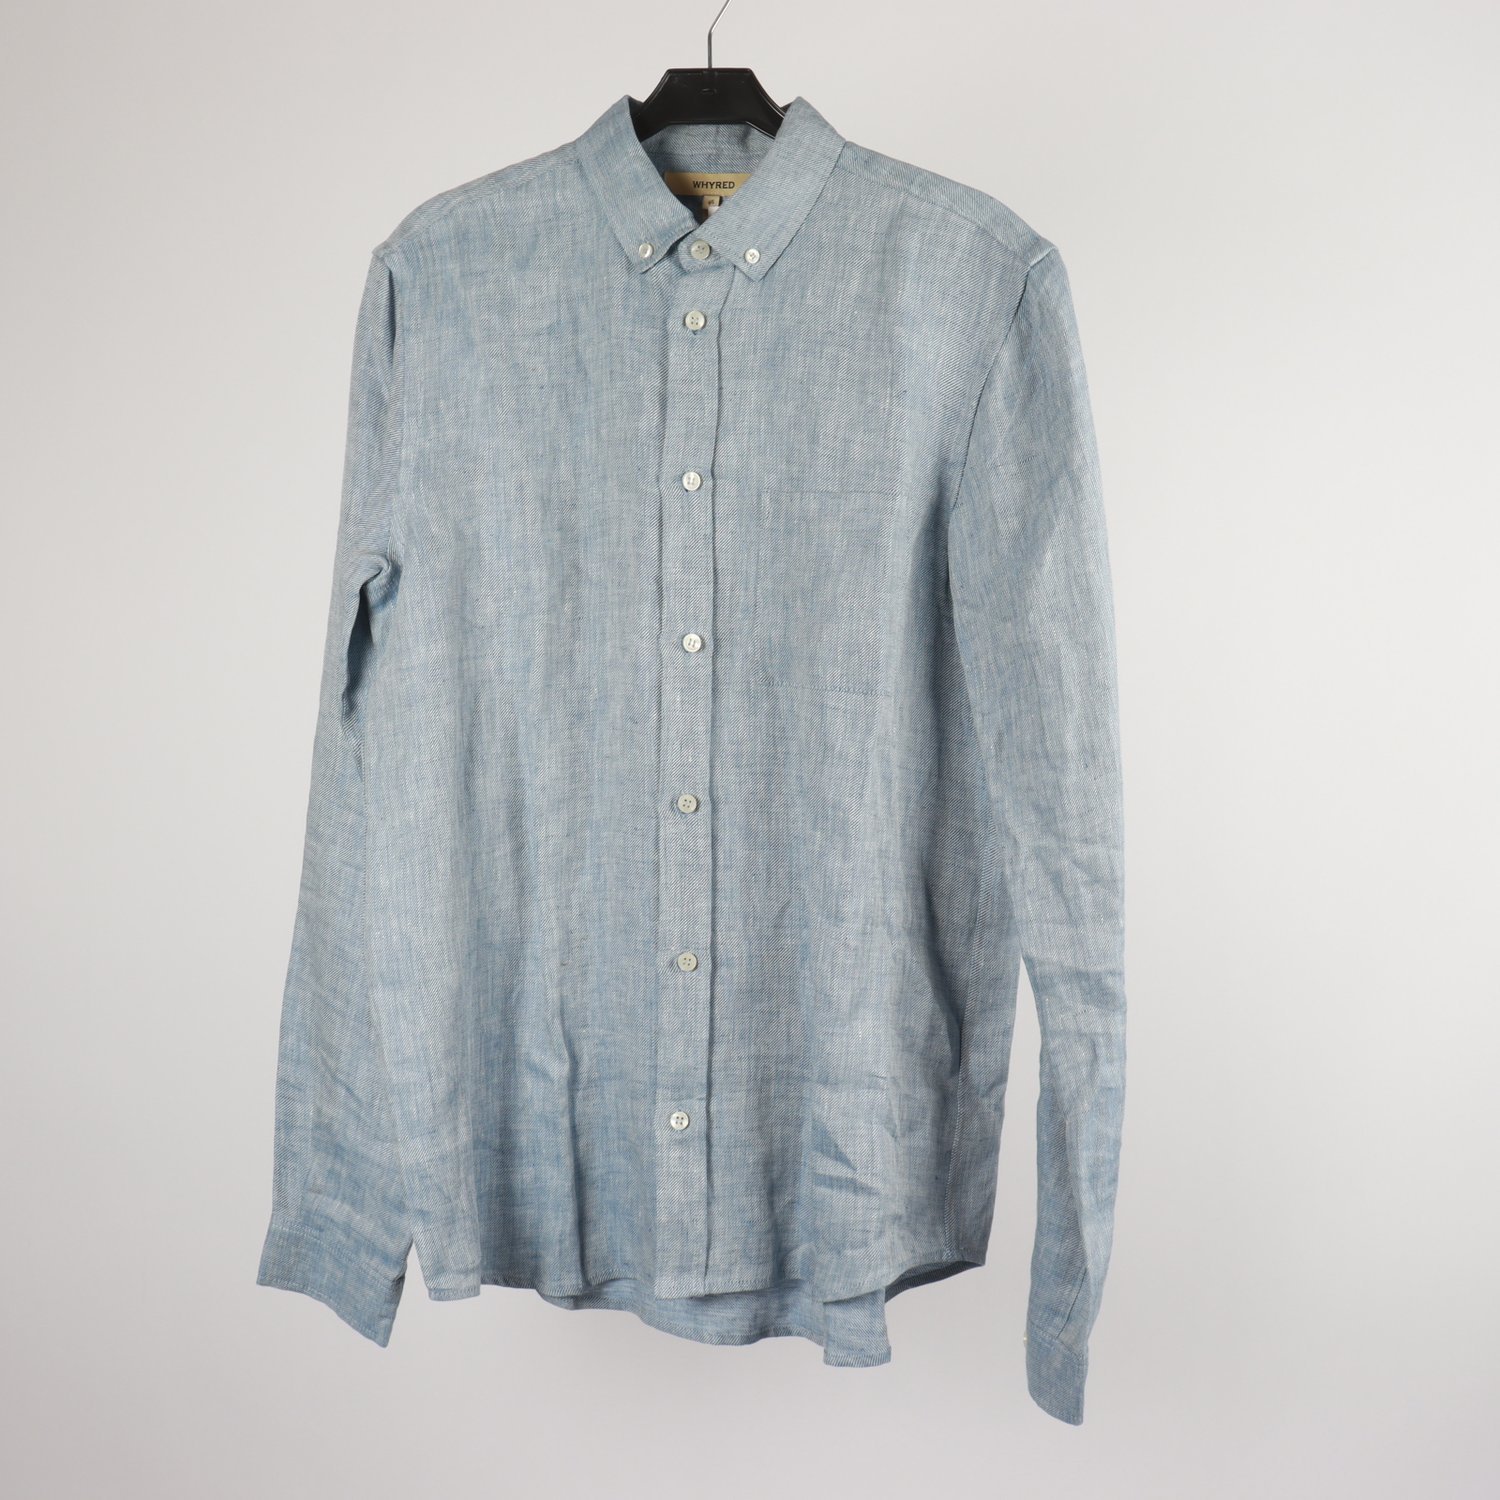 Skjorta, Whyred, blå, 100 % linne, stl. 46